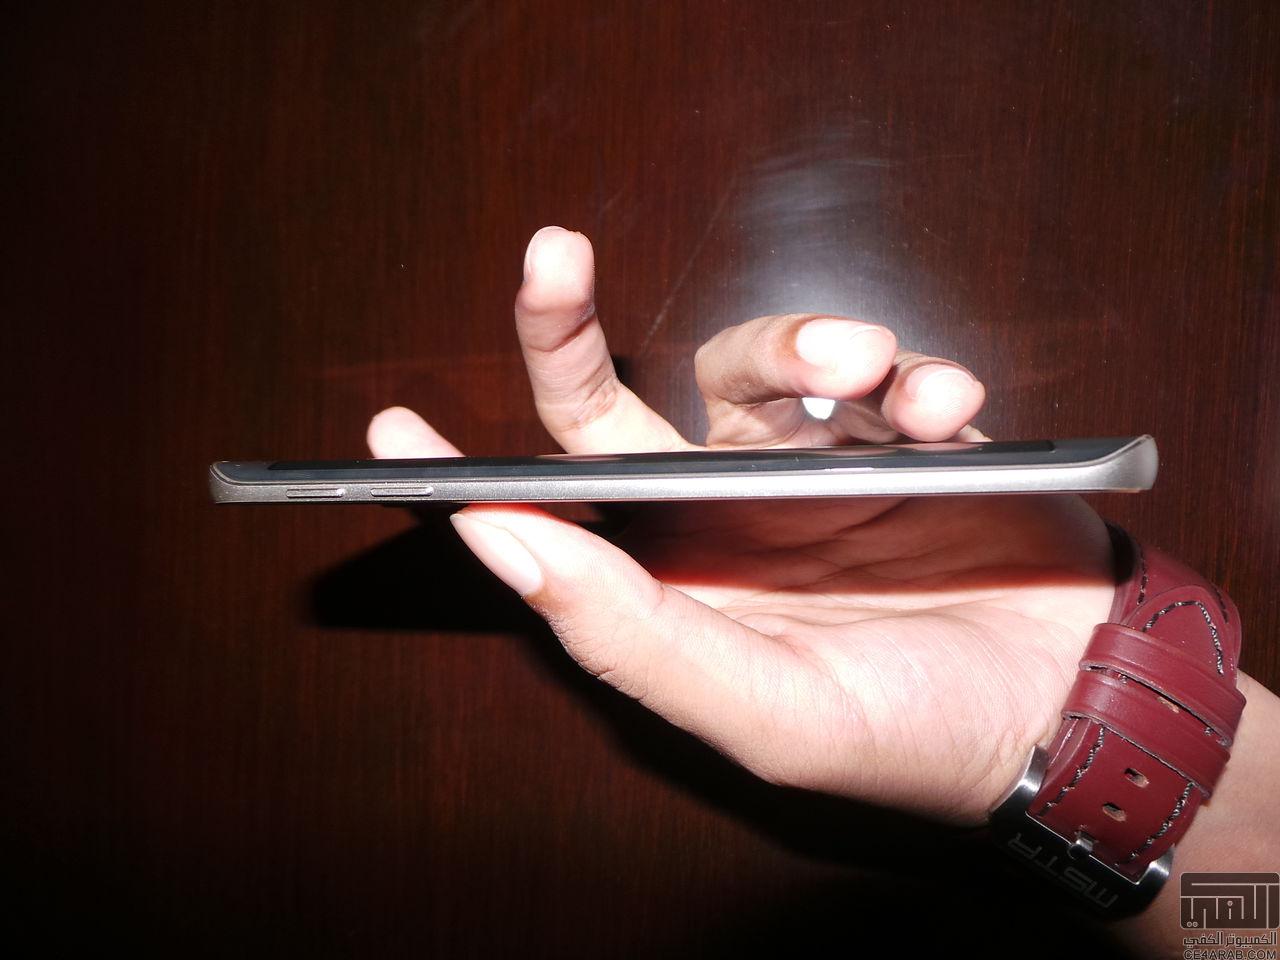 حصري: استعراض هاتف Galaxy S6 edge